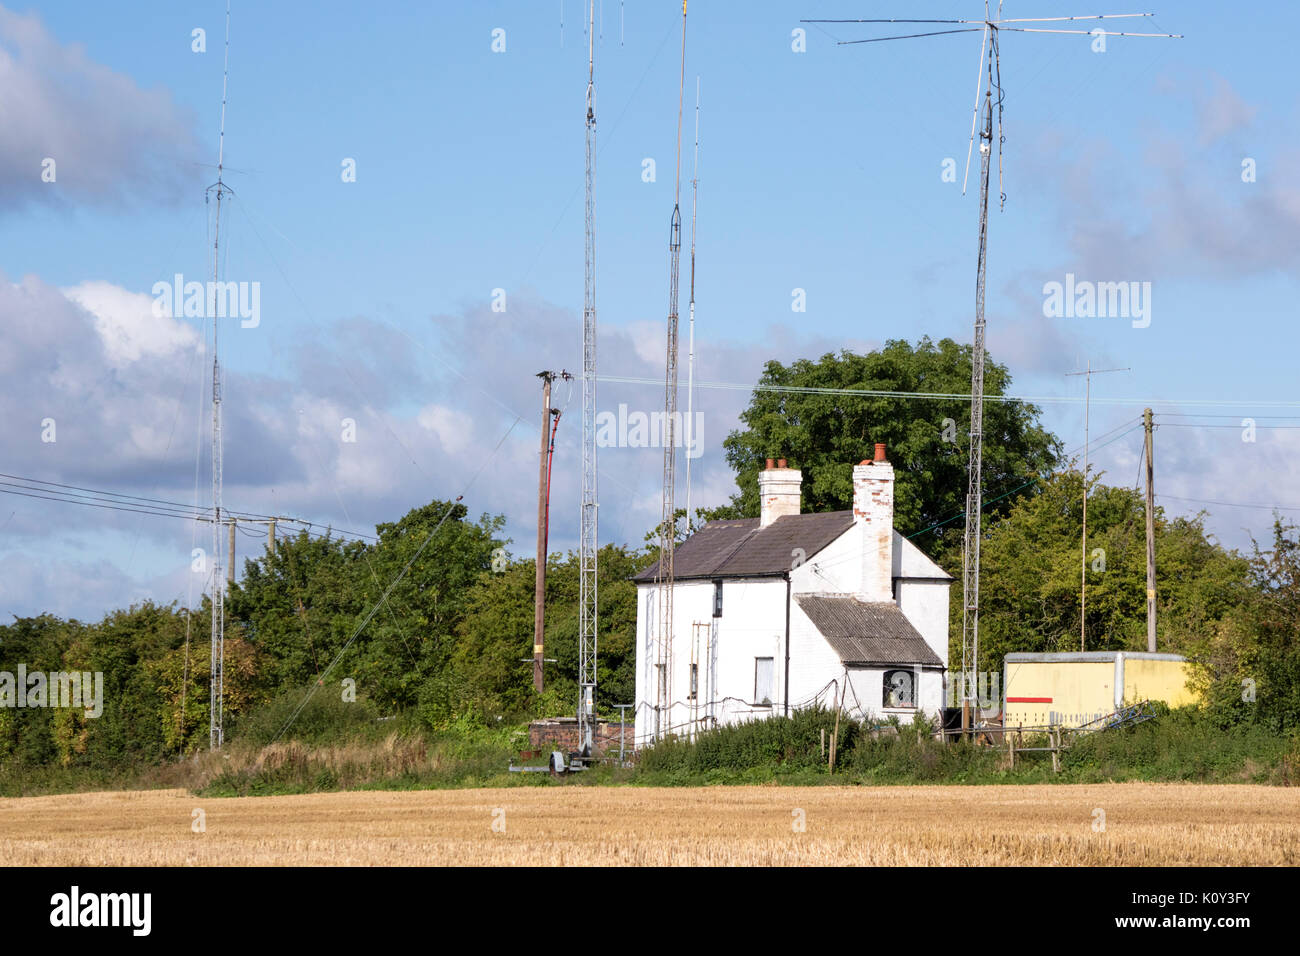 Amateur radio masts on a country cottage, England, UK Stock Photo